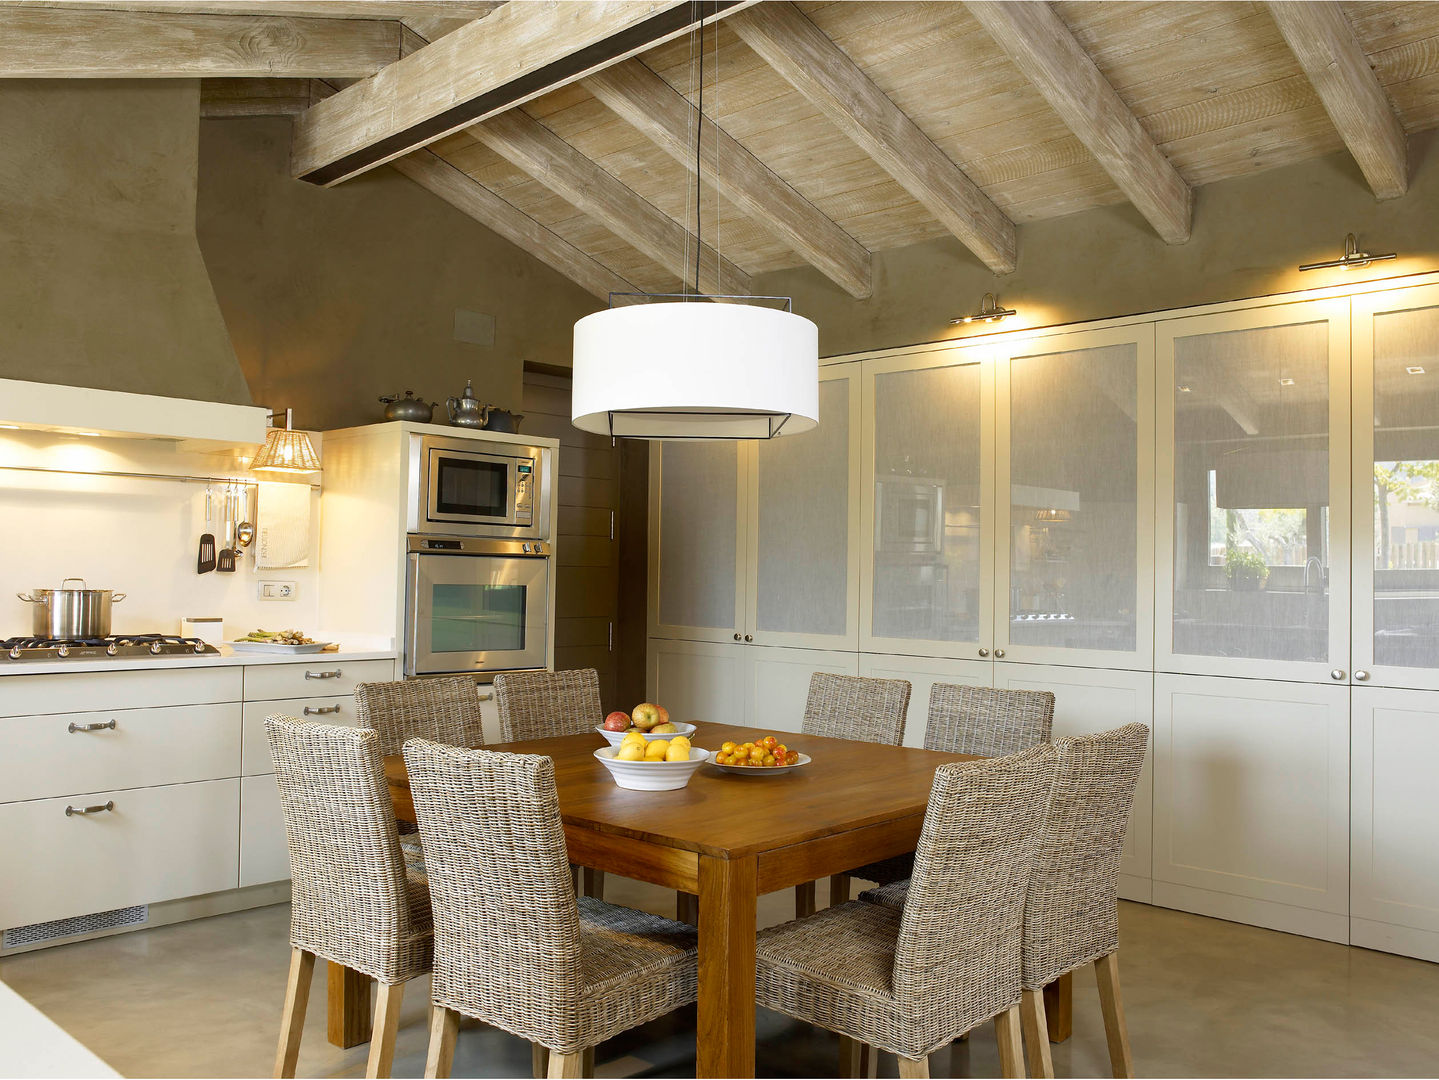 Tres espacios en uno: cocina, lavadero y planchador, DEULONDER arquitectura domestica DEULONDER arquitectura domestica Cozinhas rústicas